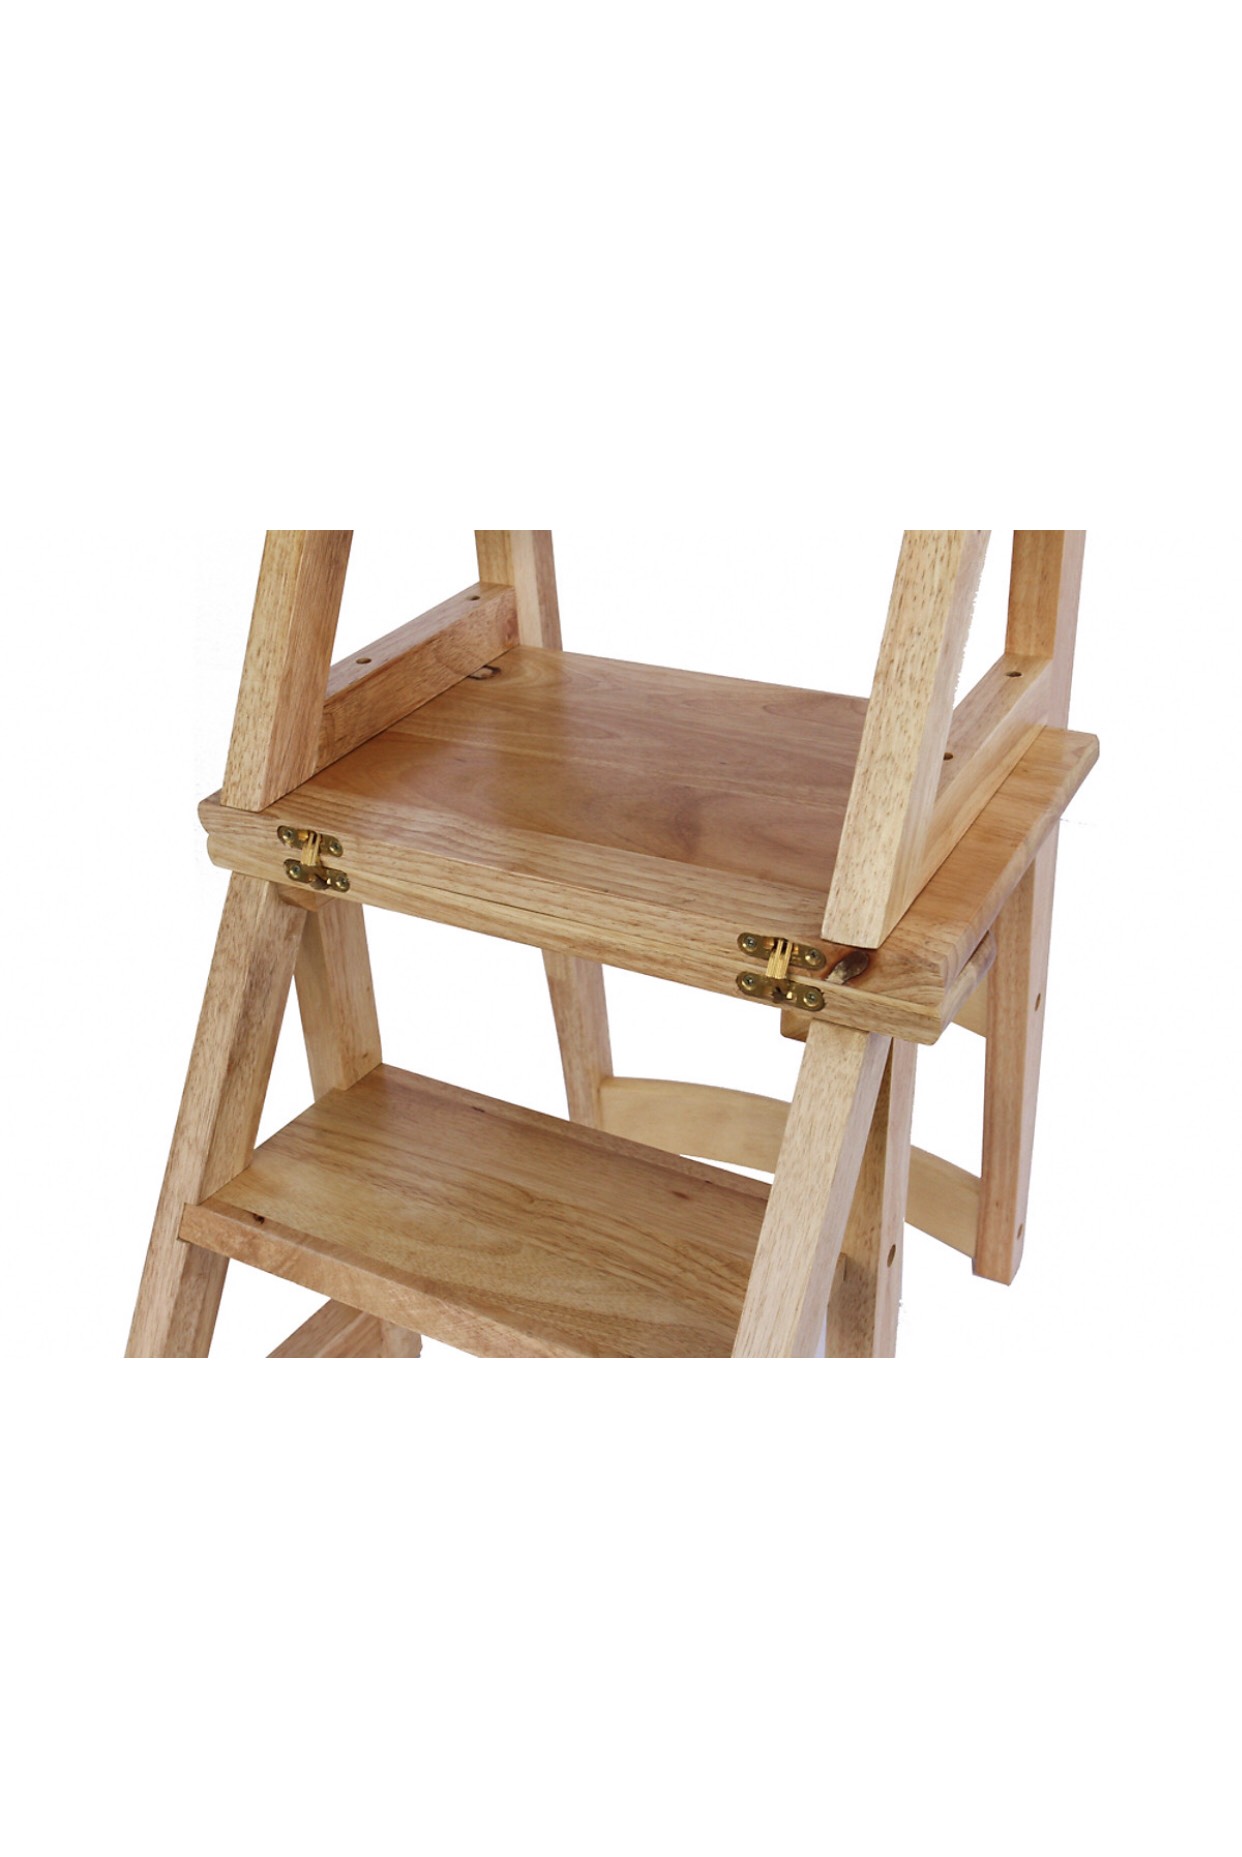 Thang thắp nhang gỗ cao su tự nhiên mẫu thang ghế gấp đa năng KH12118